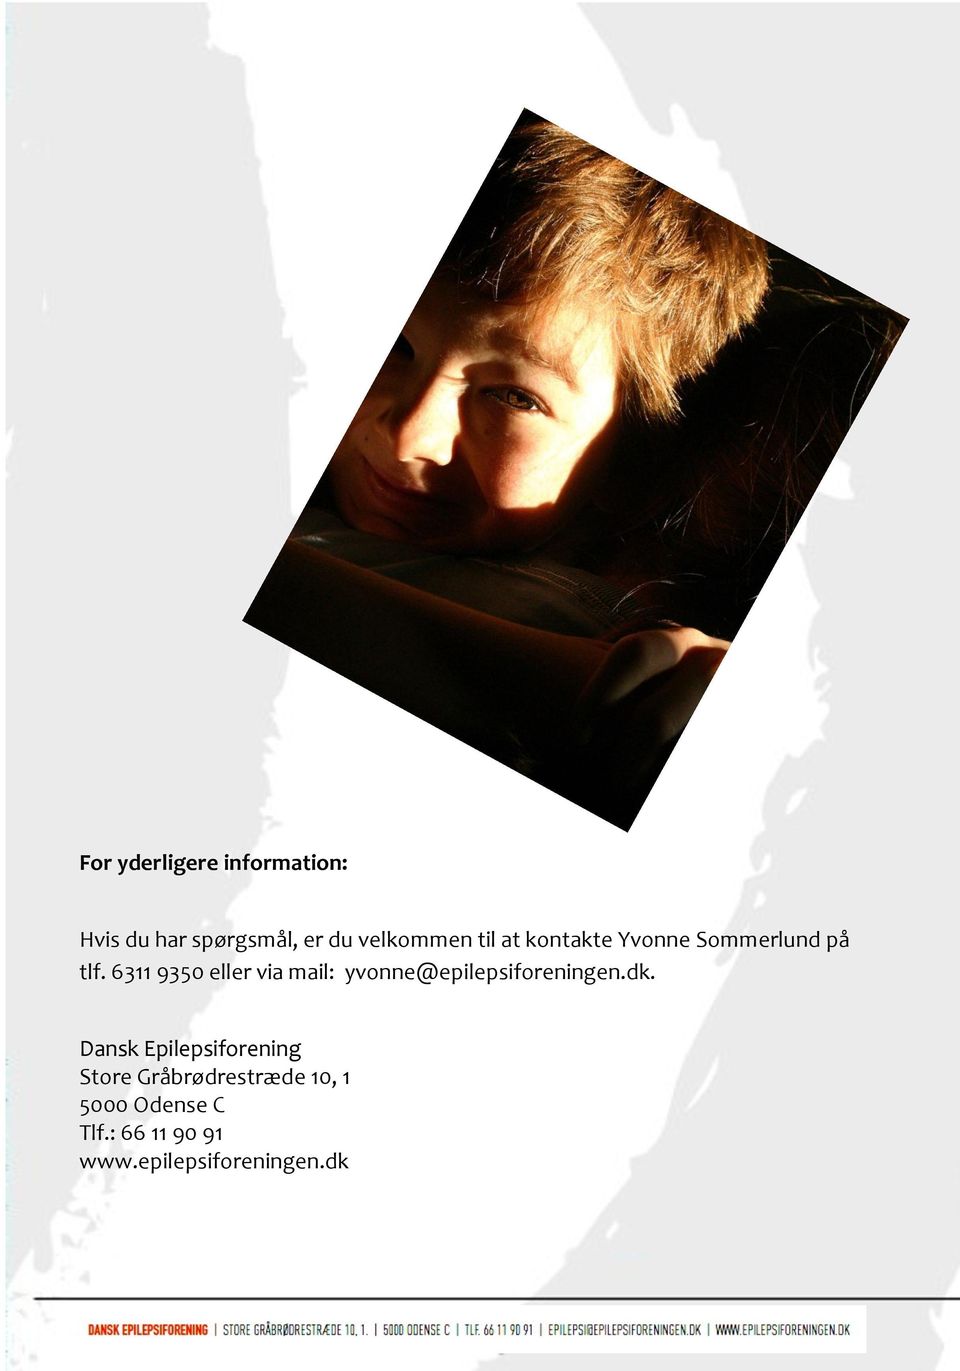 6311 9350 eller via mail: yvonne@epilepsiforeningen.dk.